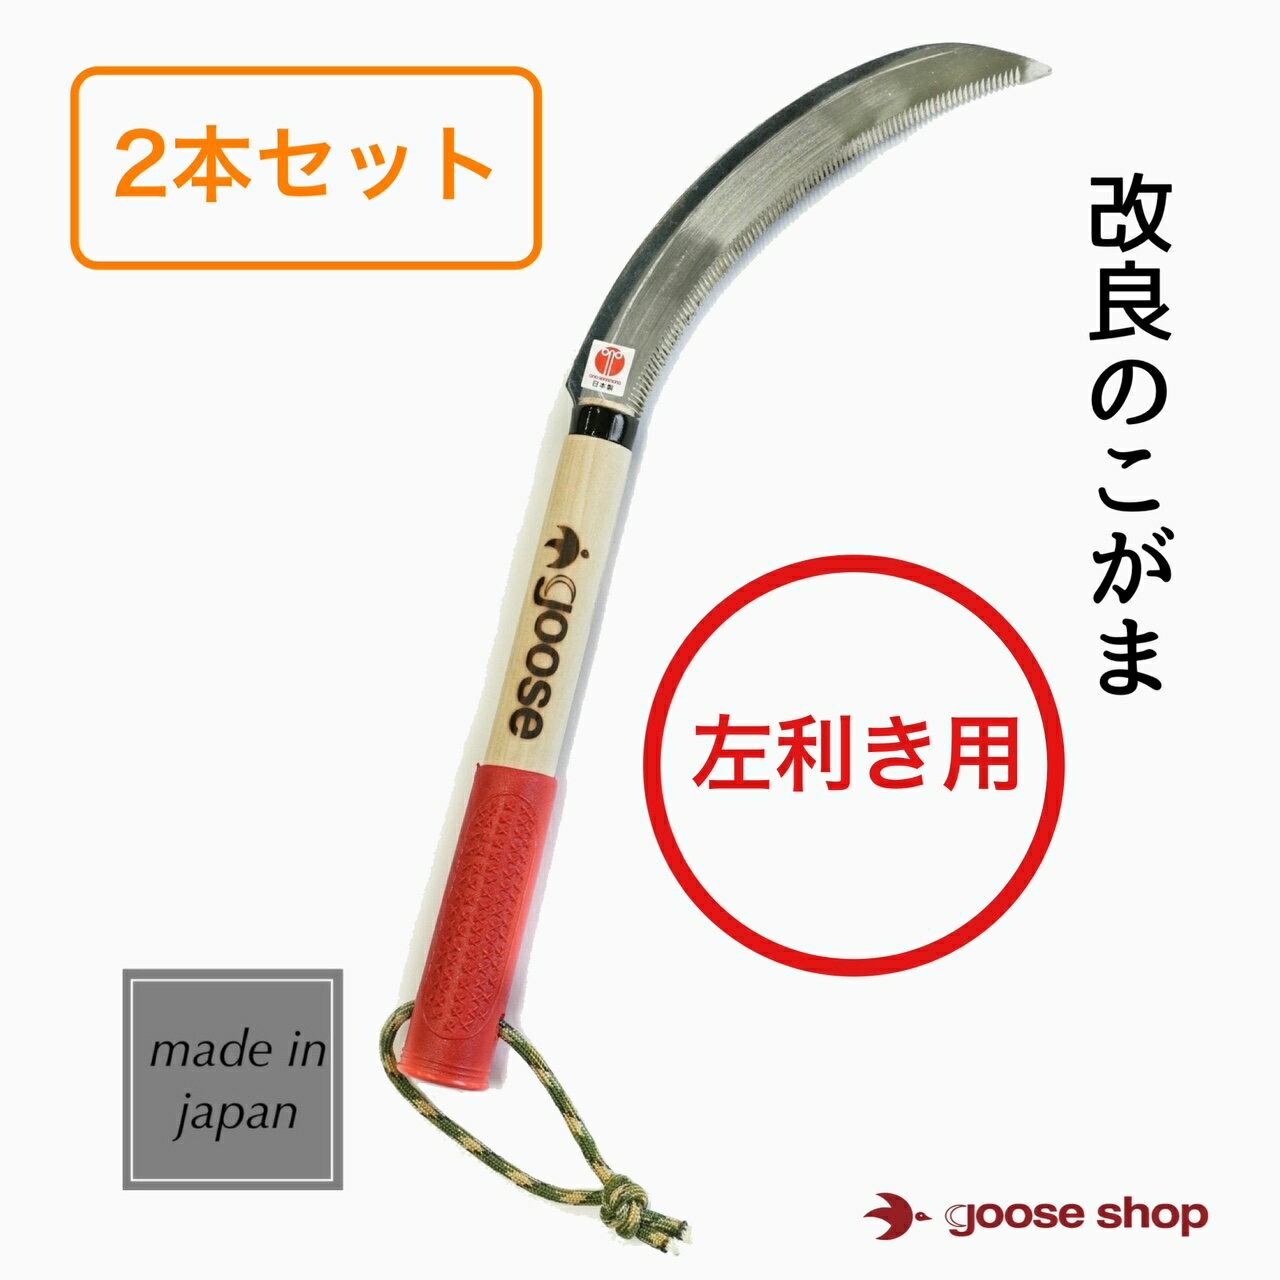 【2本組】鋸鎌 ステンレス製 ノコギリ KJ-1115 草刈 稲刈り